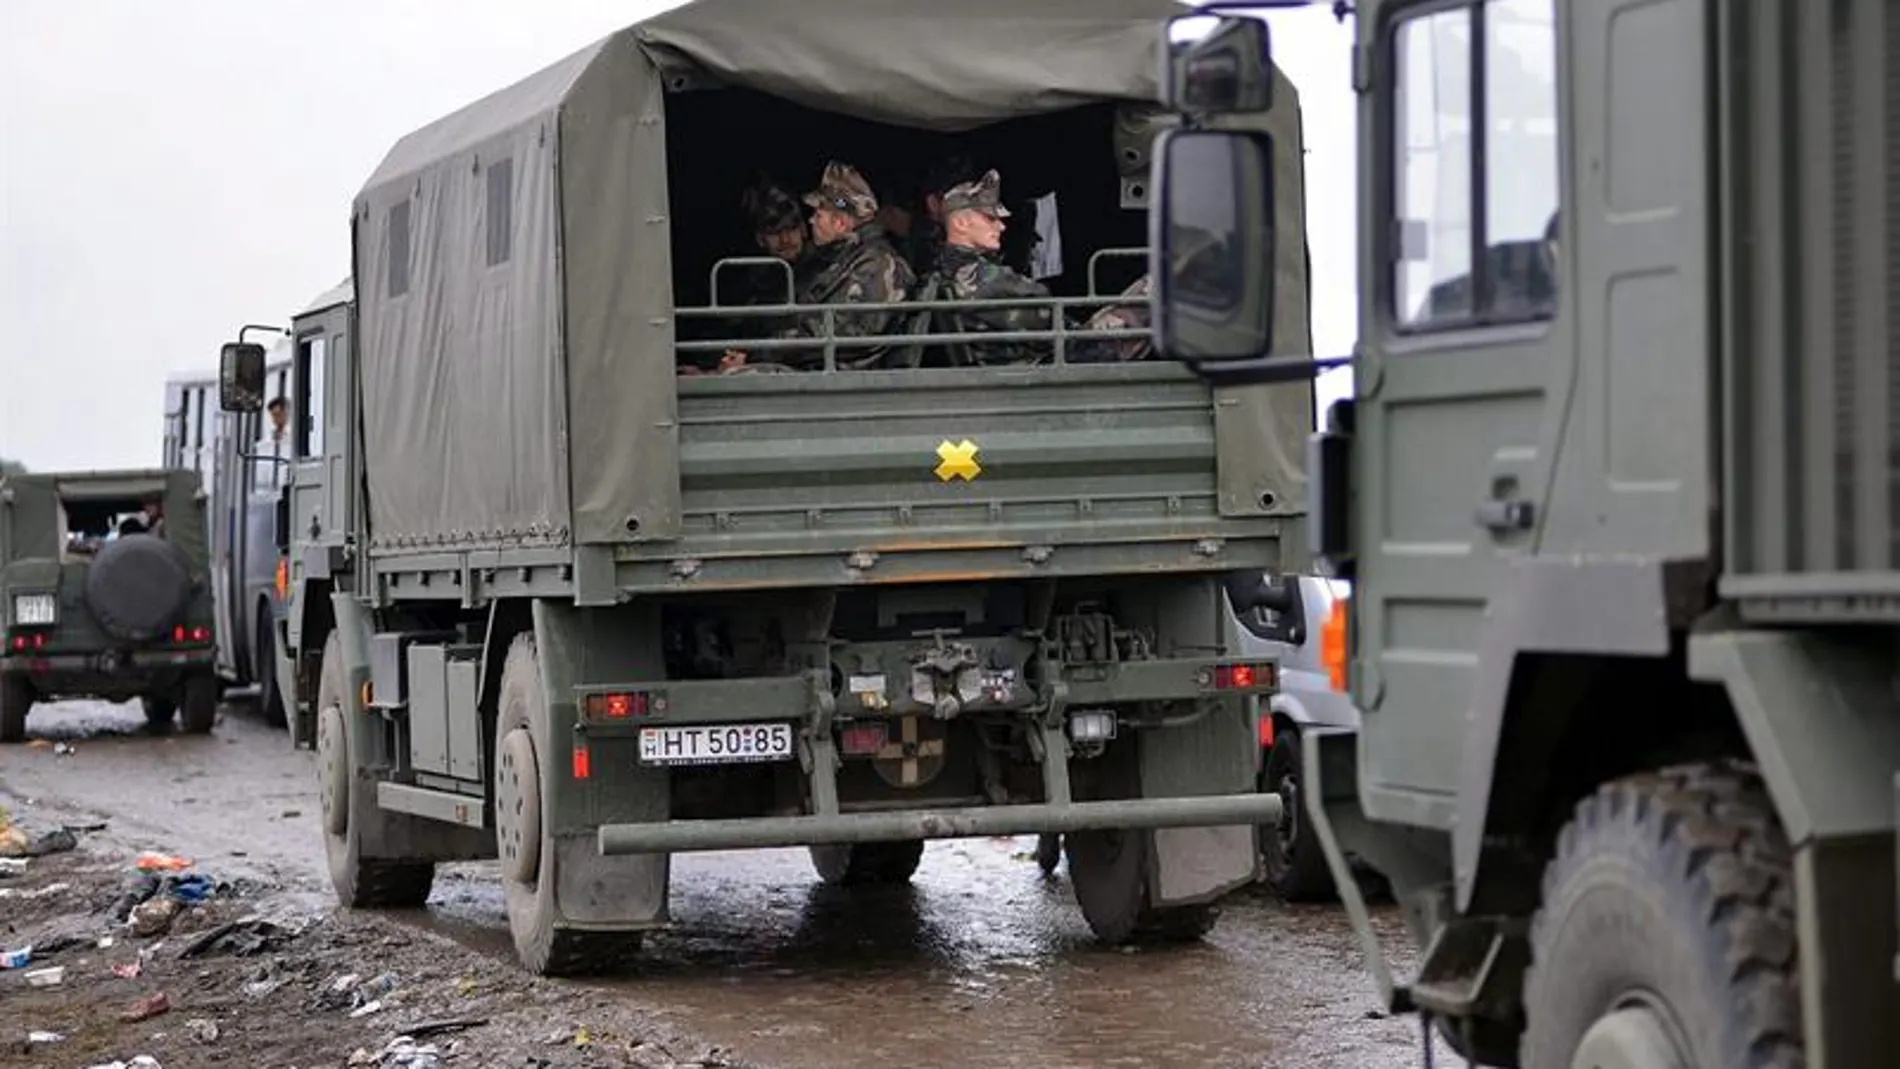 Vehículos militares en un campo improvisado para refugiados cerca de Roszke